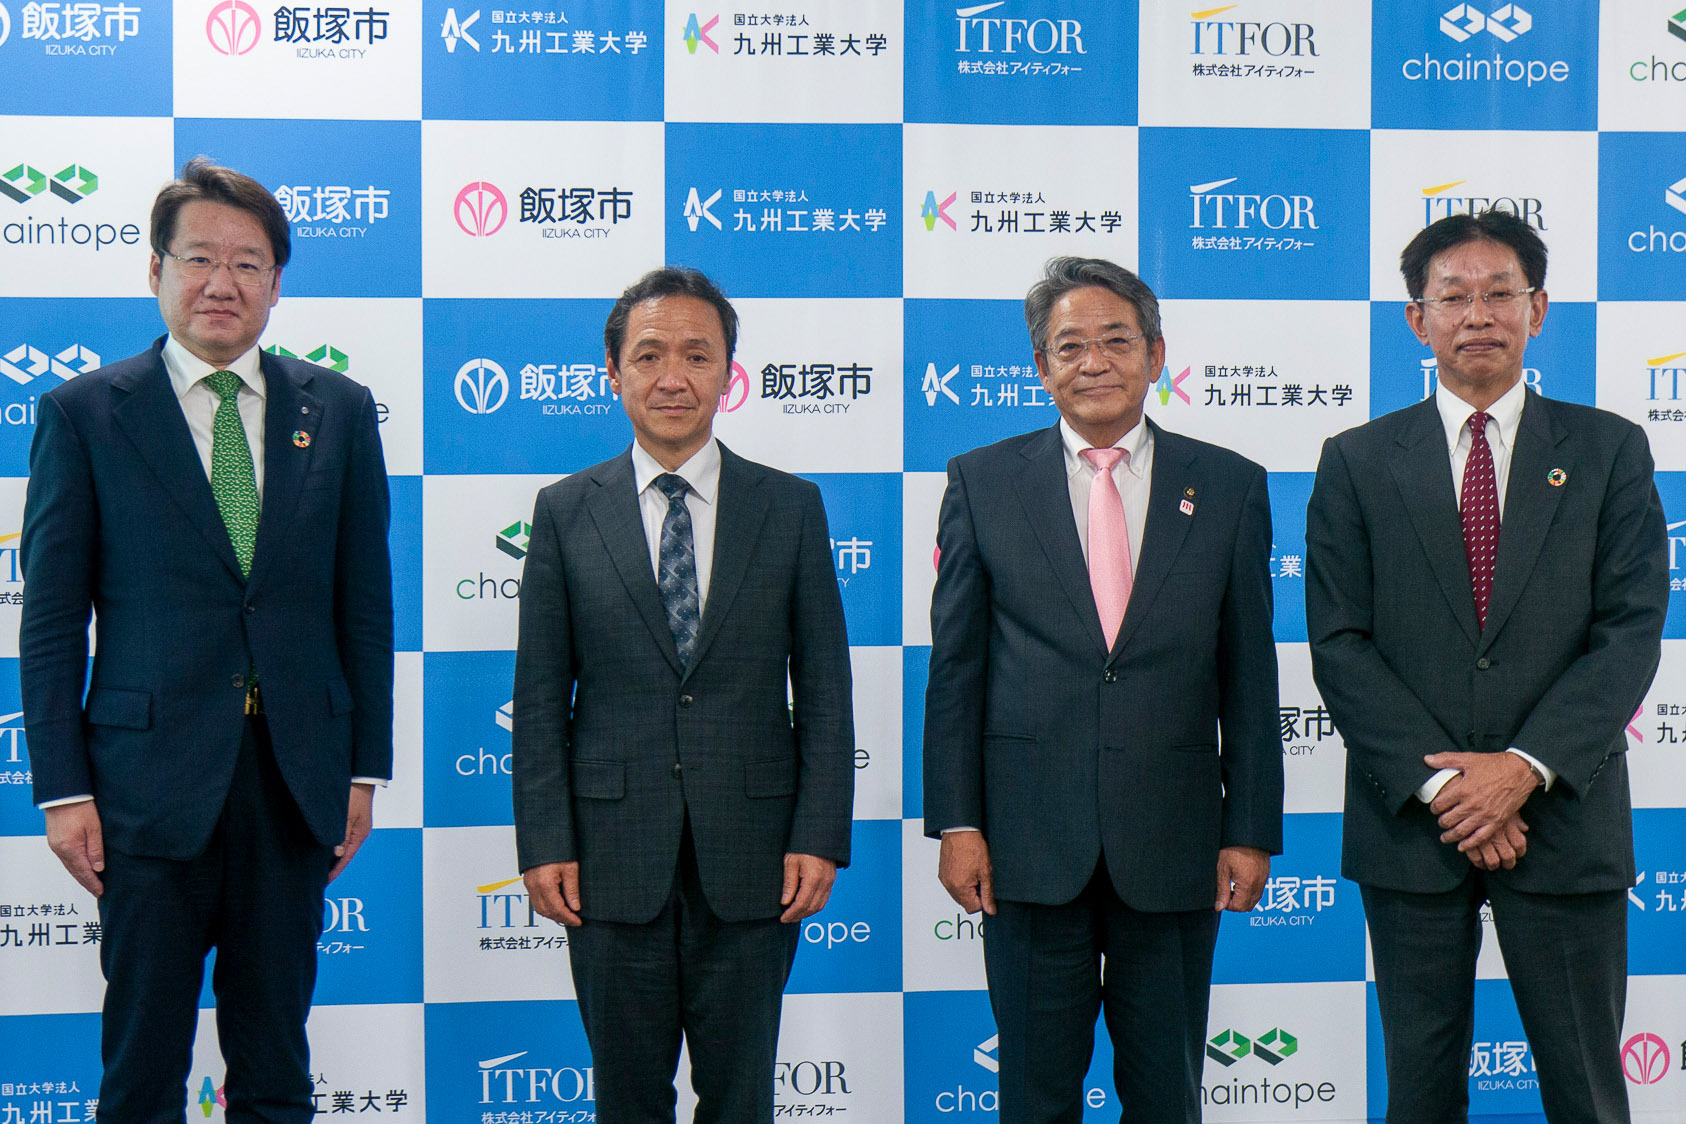 左から、chaintope 正田社長、九州工業大学 三谷学長、飯塚市 片峯市長、アイティフォー 佐藤社長